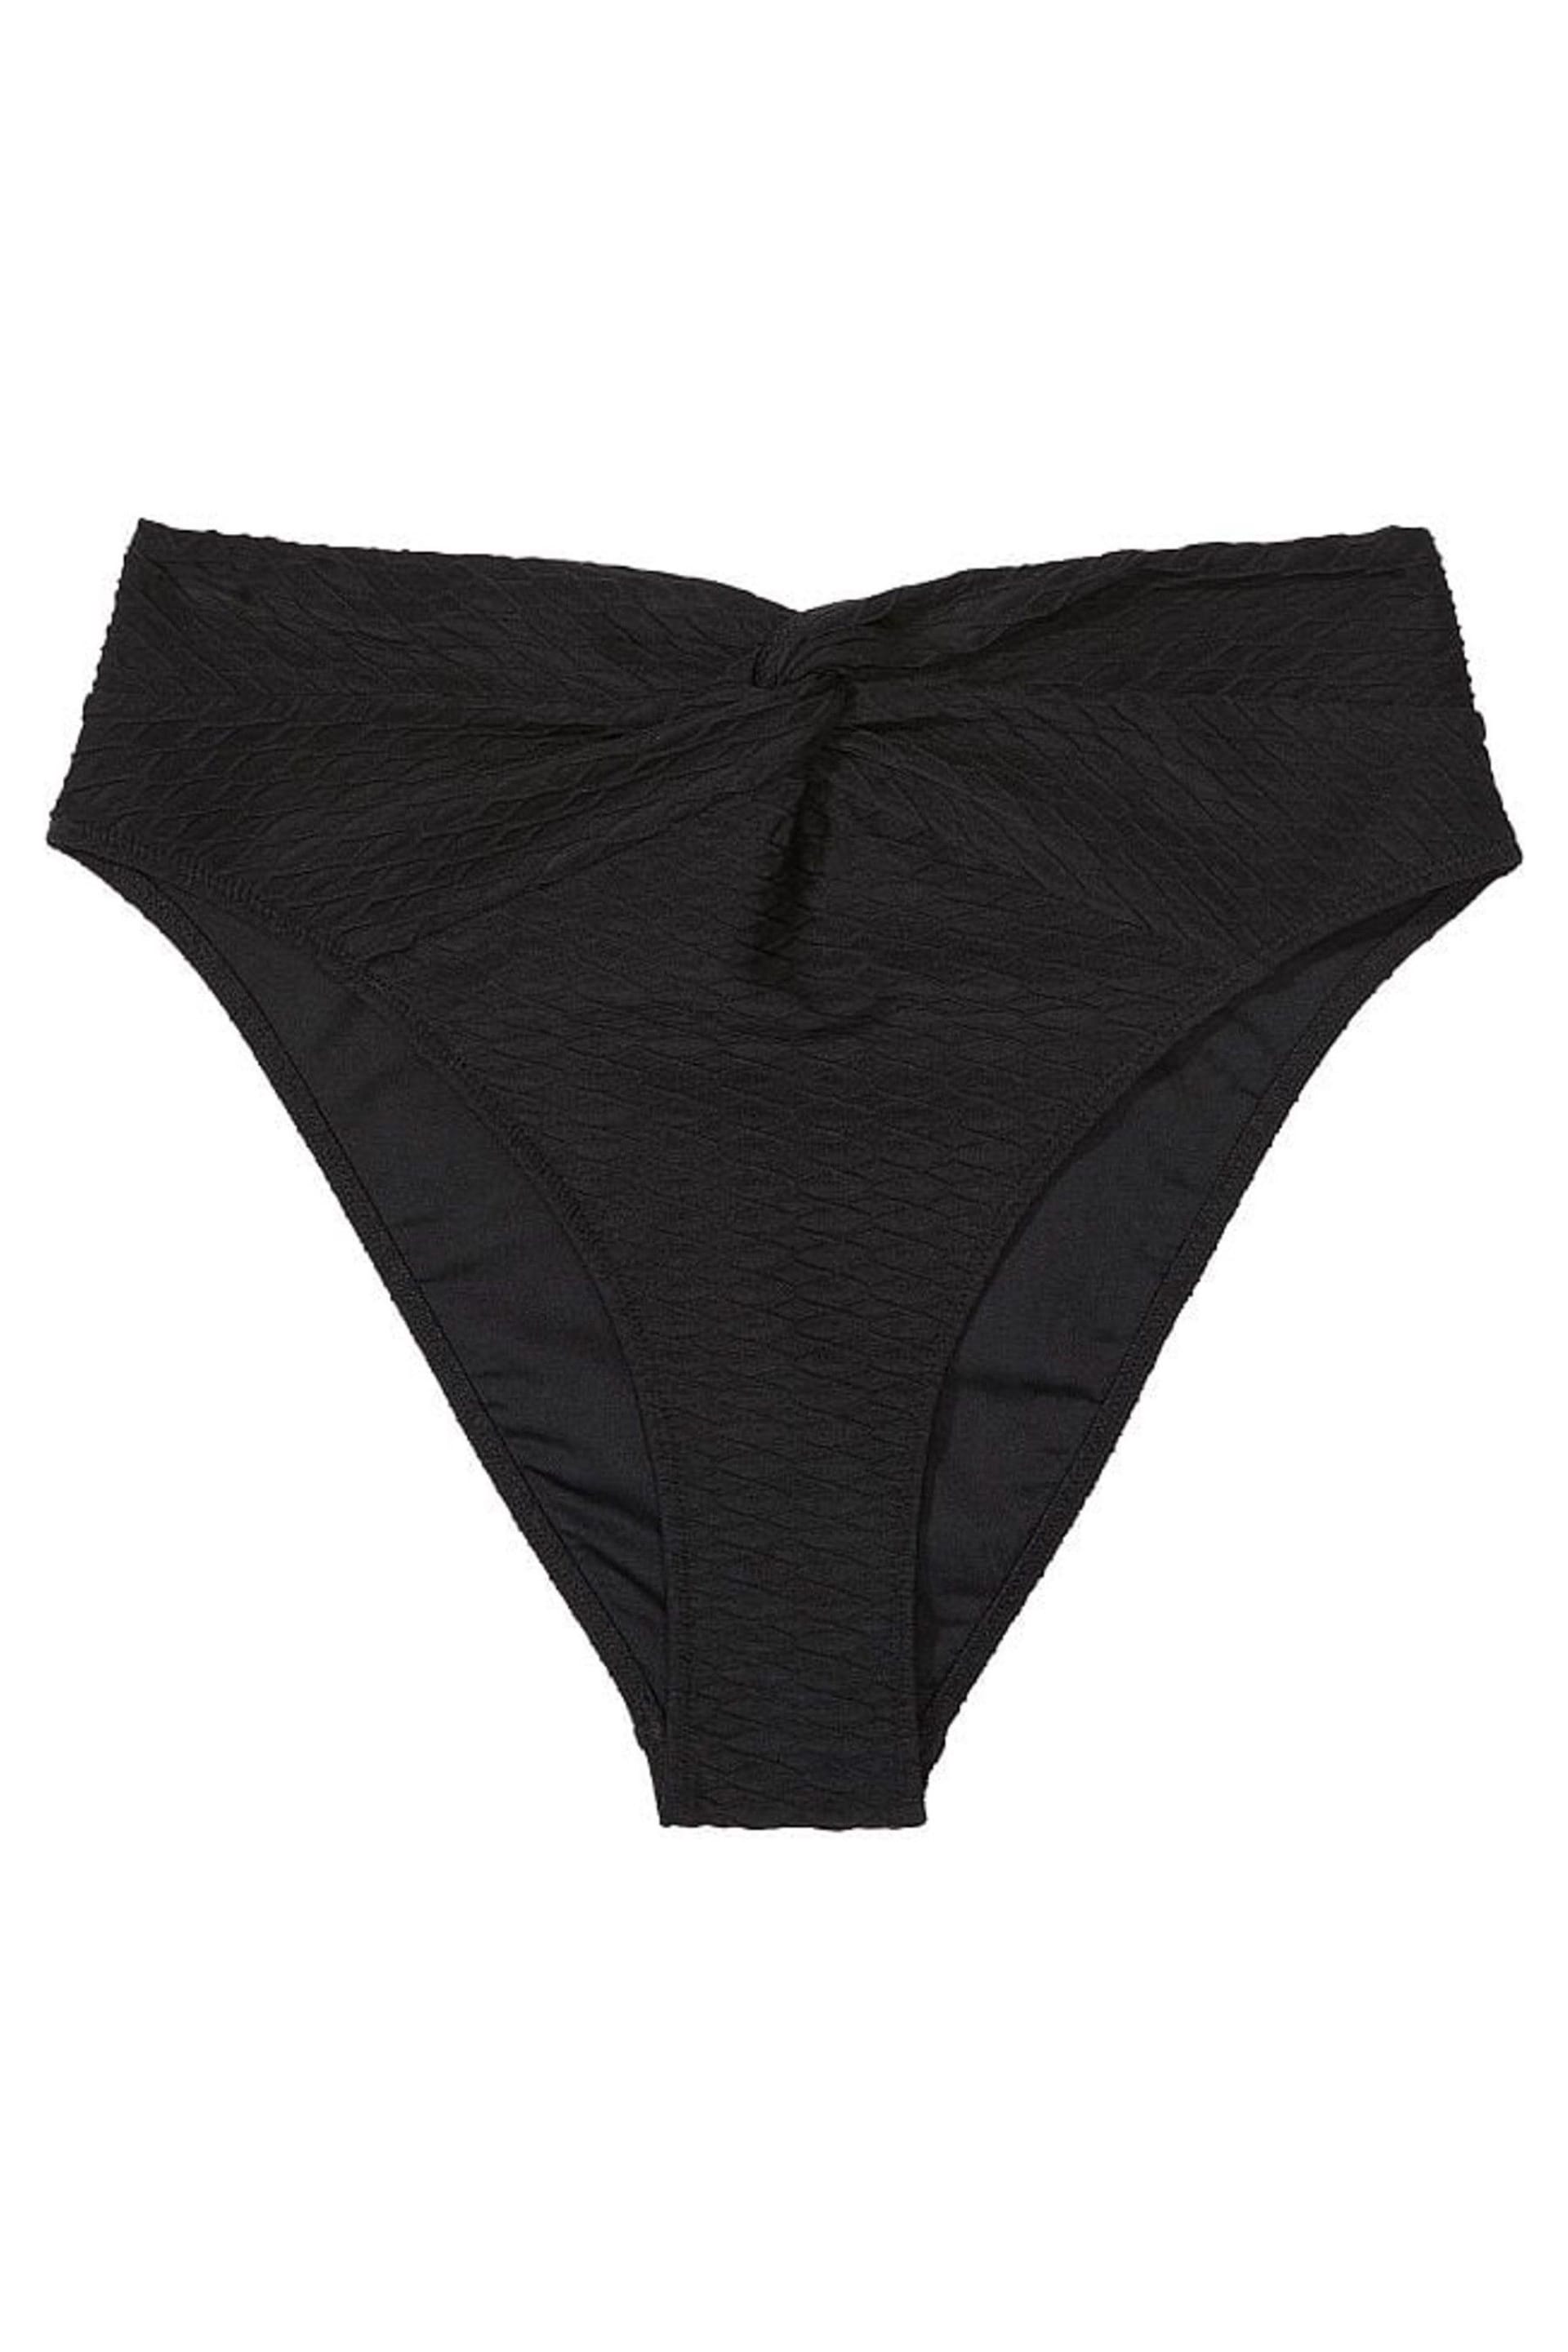 Victoria's Secret Black Fishnet High Leg Swim Bikini Bottom - Image 3 of 4